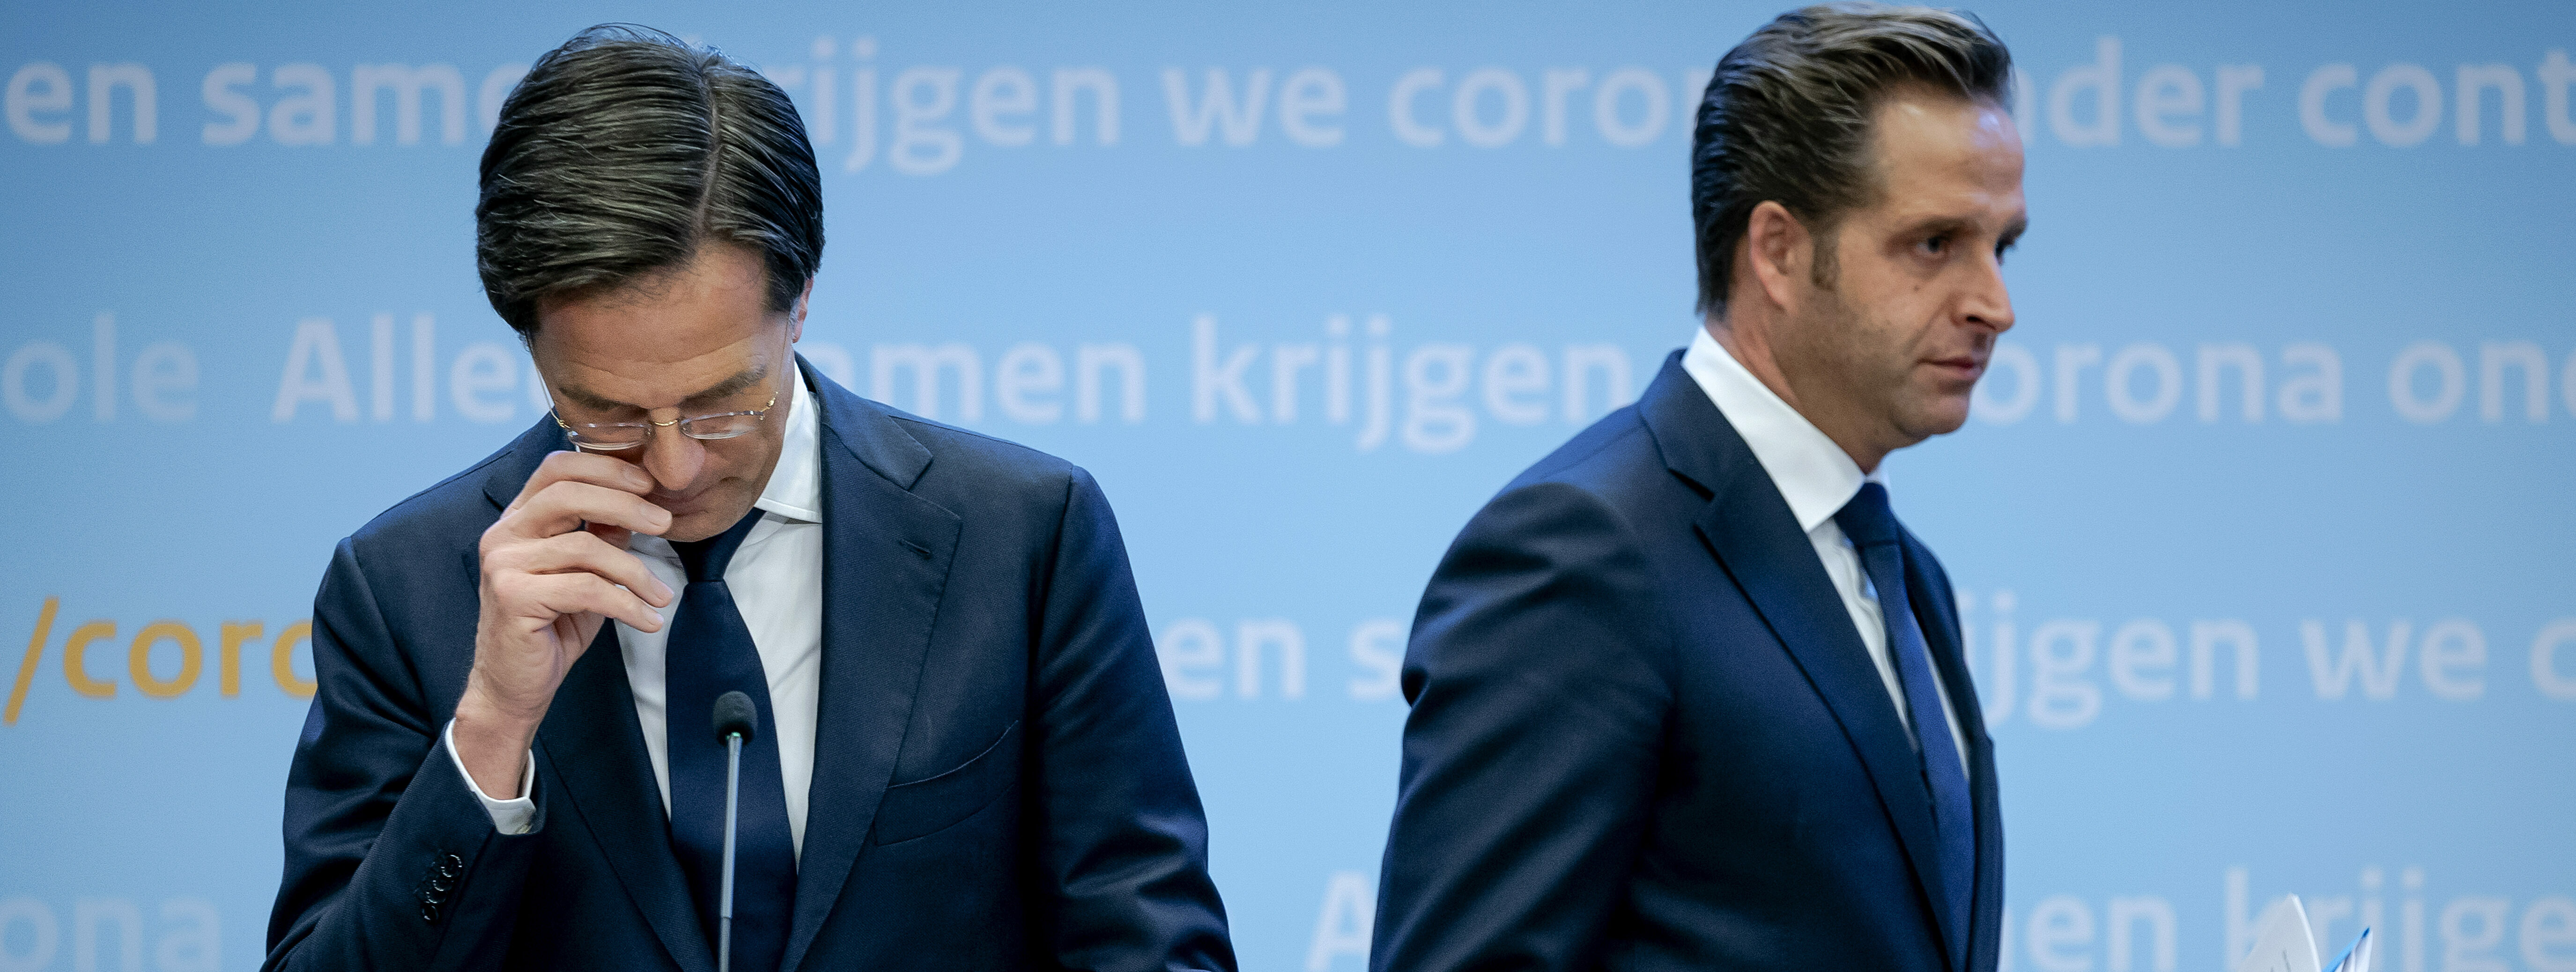 Premier Mark Rutte en Hugo de Jonge tijdens de personferentie.